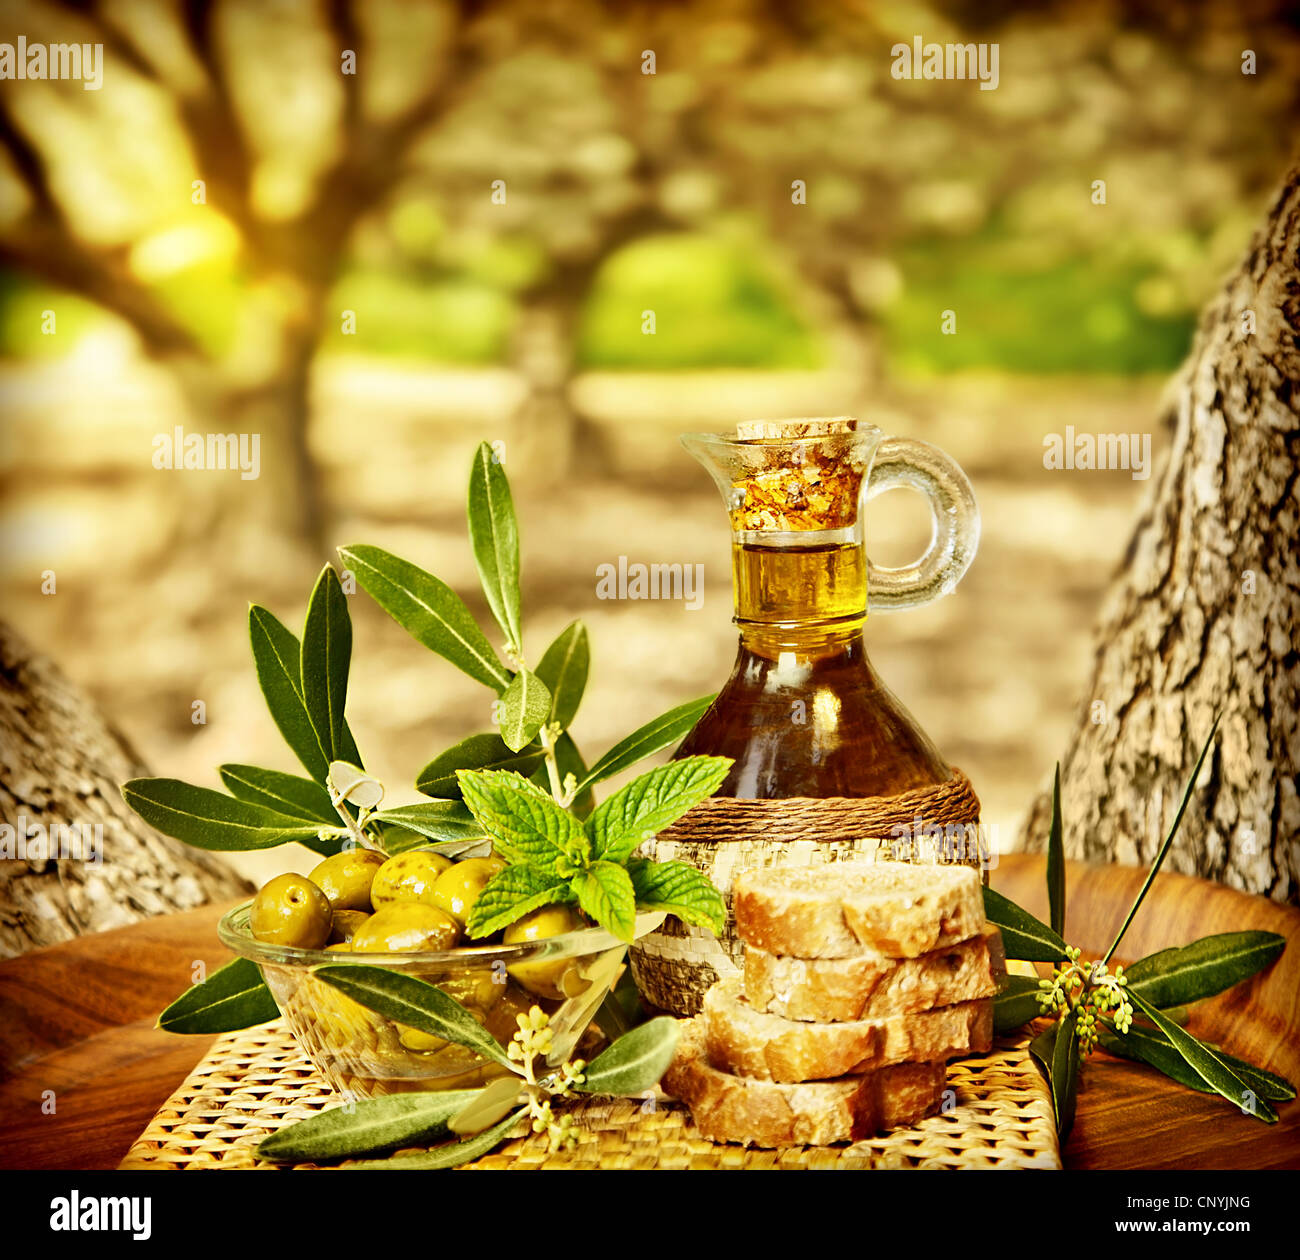 La vie encore Olives, aliments frais dans jardin d'oliviers, terrain agricole à campagne du Liban, de l'huile d'olive en bonne santé Banque D'Images